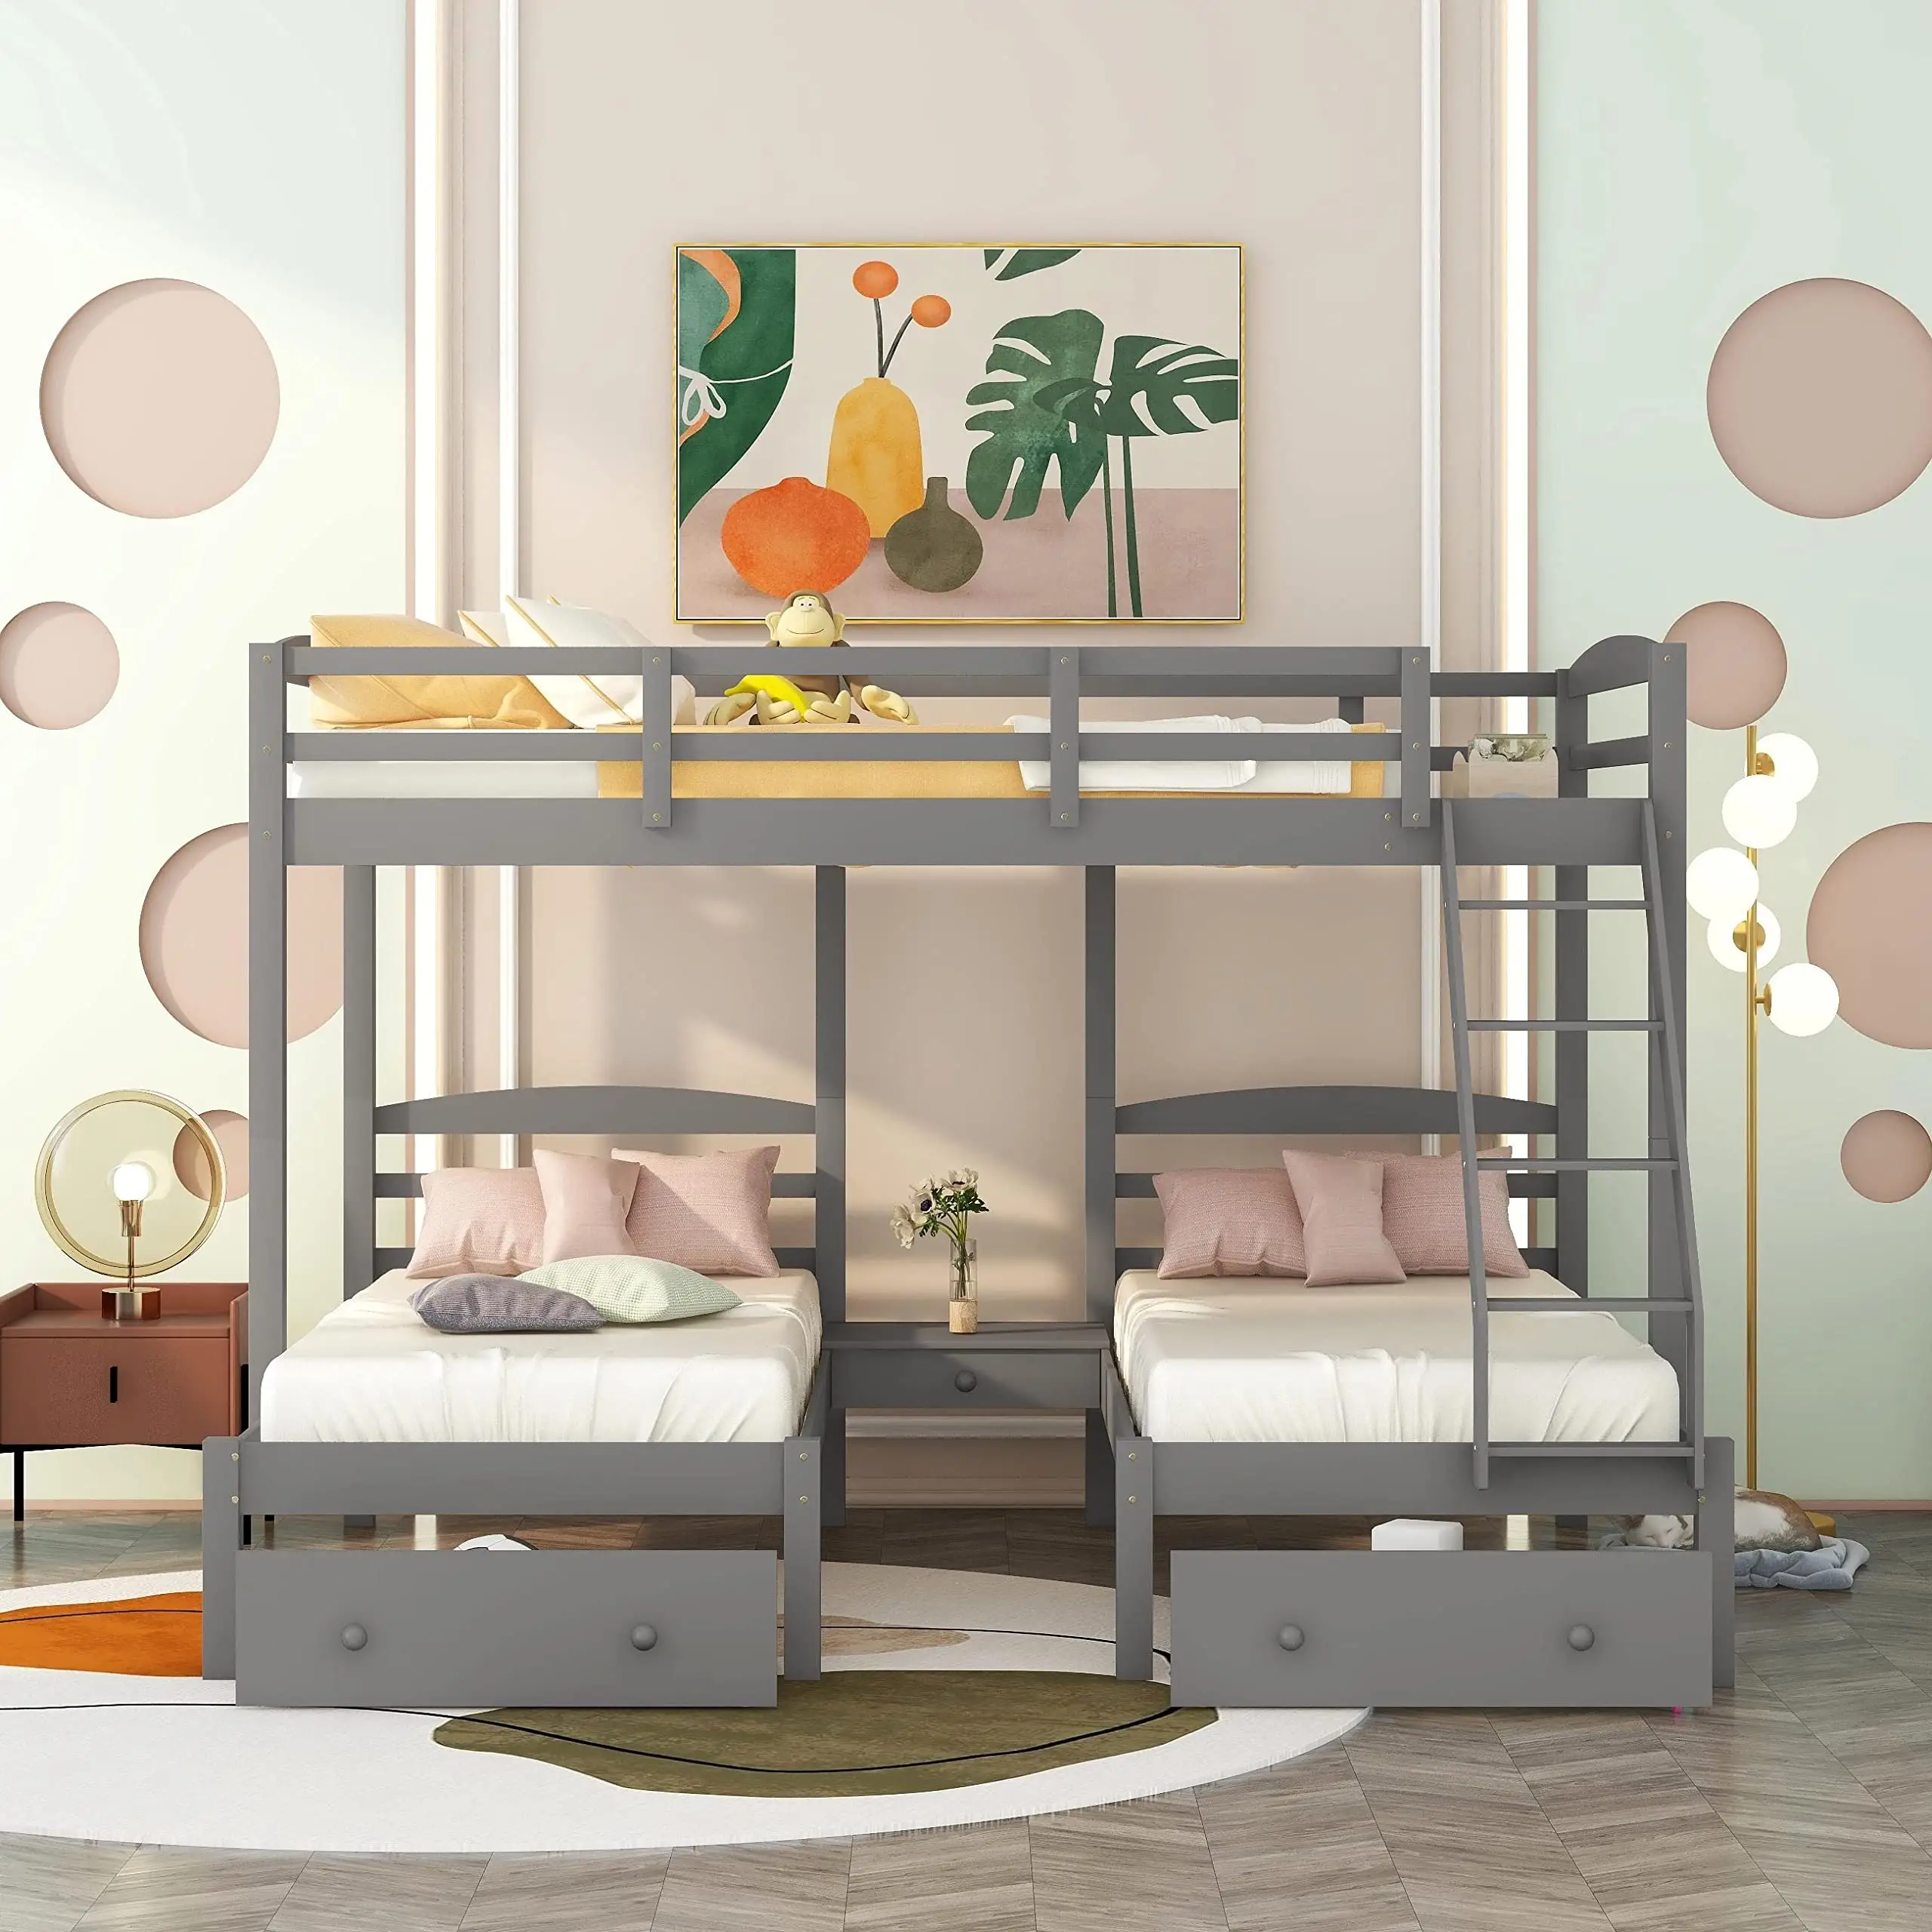 Stile moderno personalizzato colore semplice letti per bambini mobili camera da letto camera da letto imposta letto a castello singolo in legno per bambini